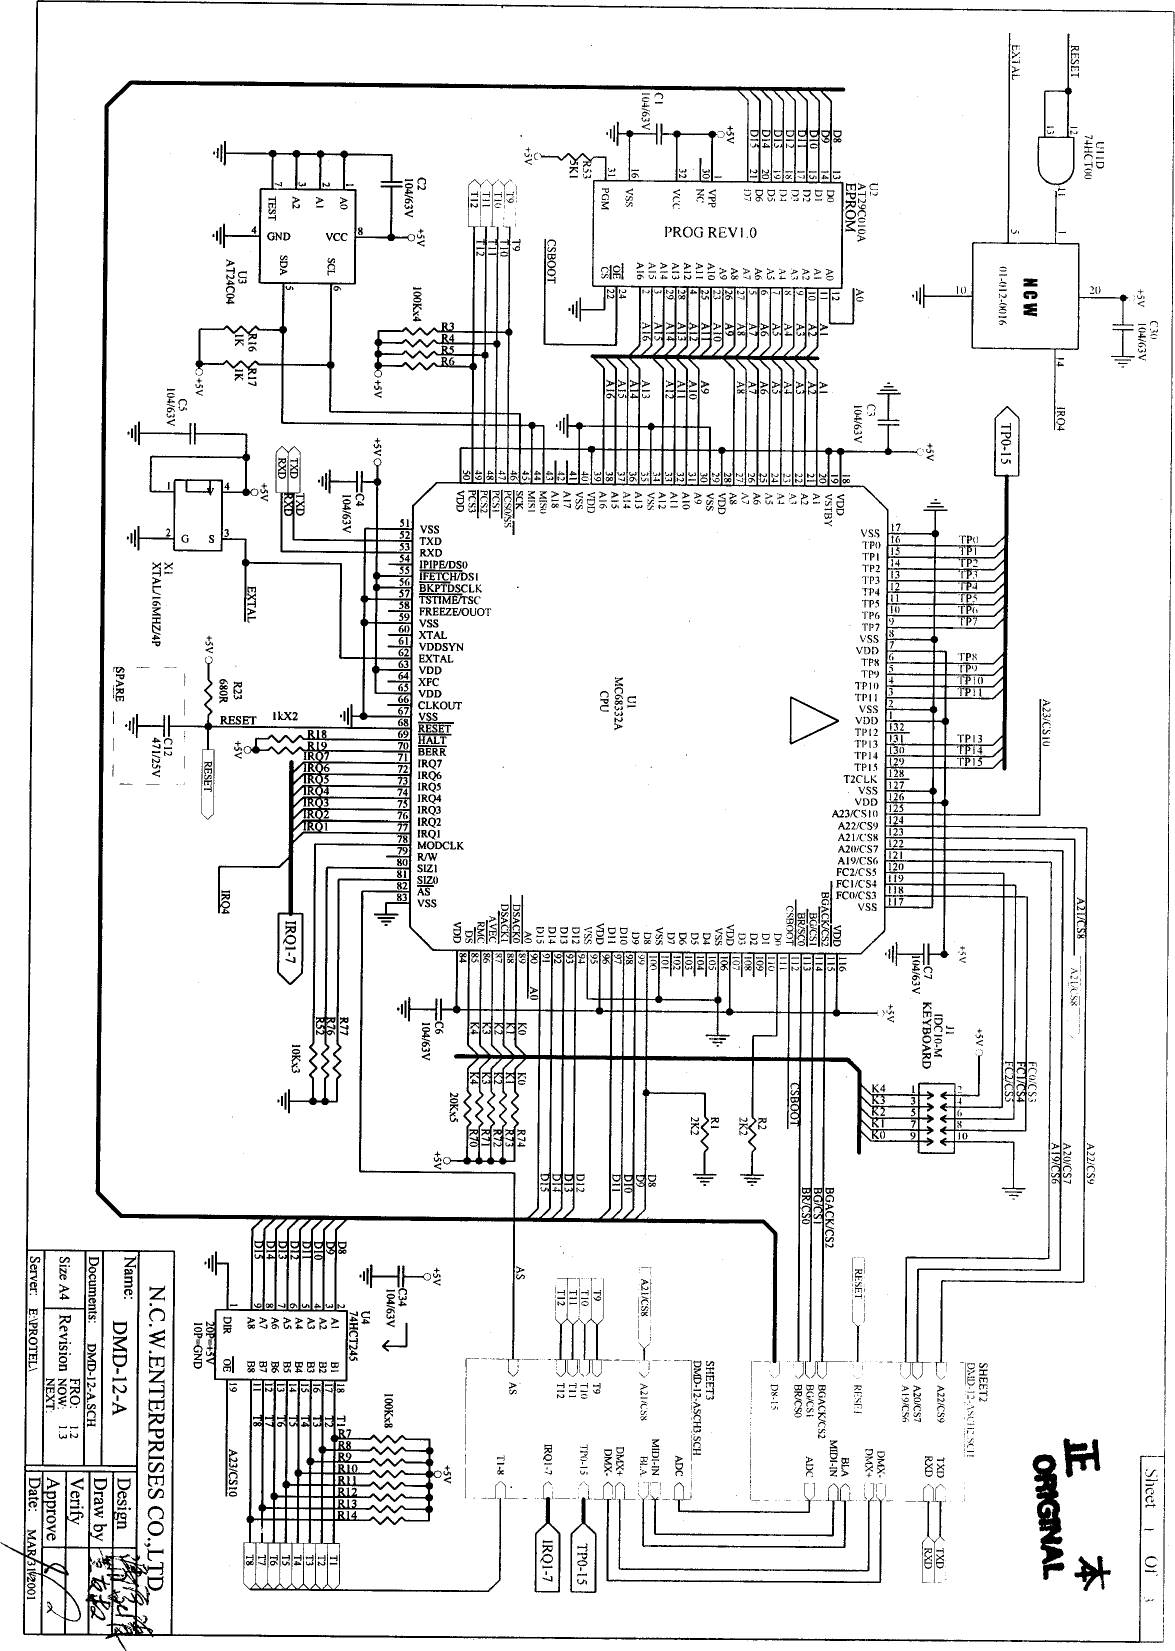 [32+] Wiring Diagram Panel Mdp